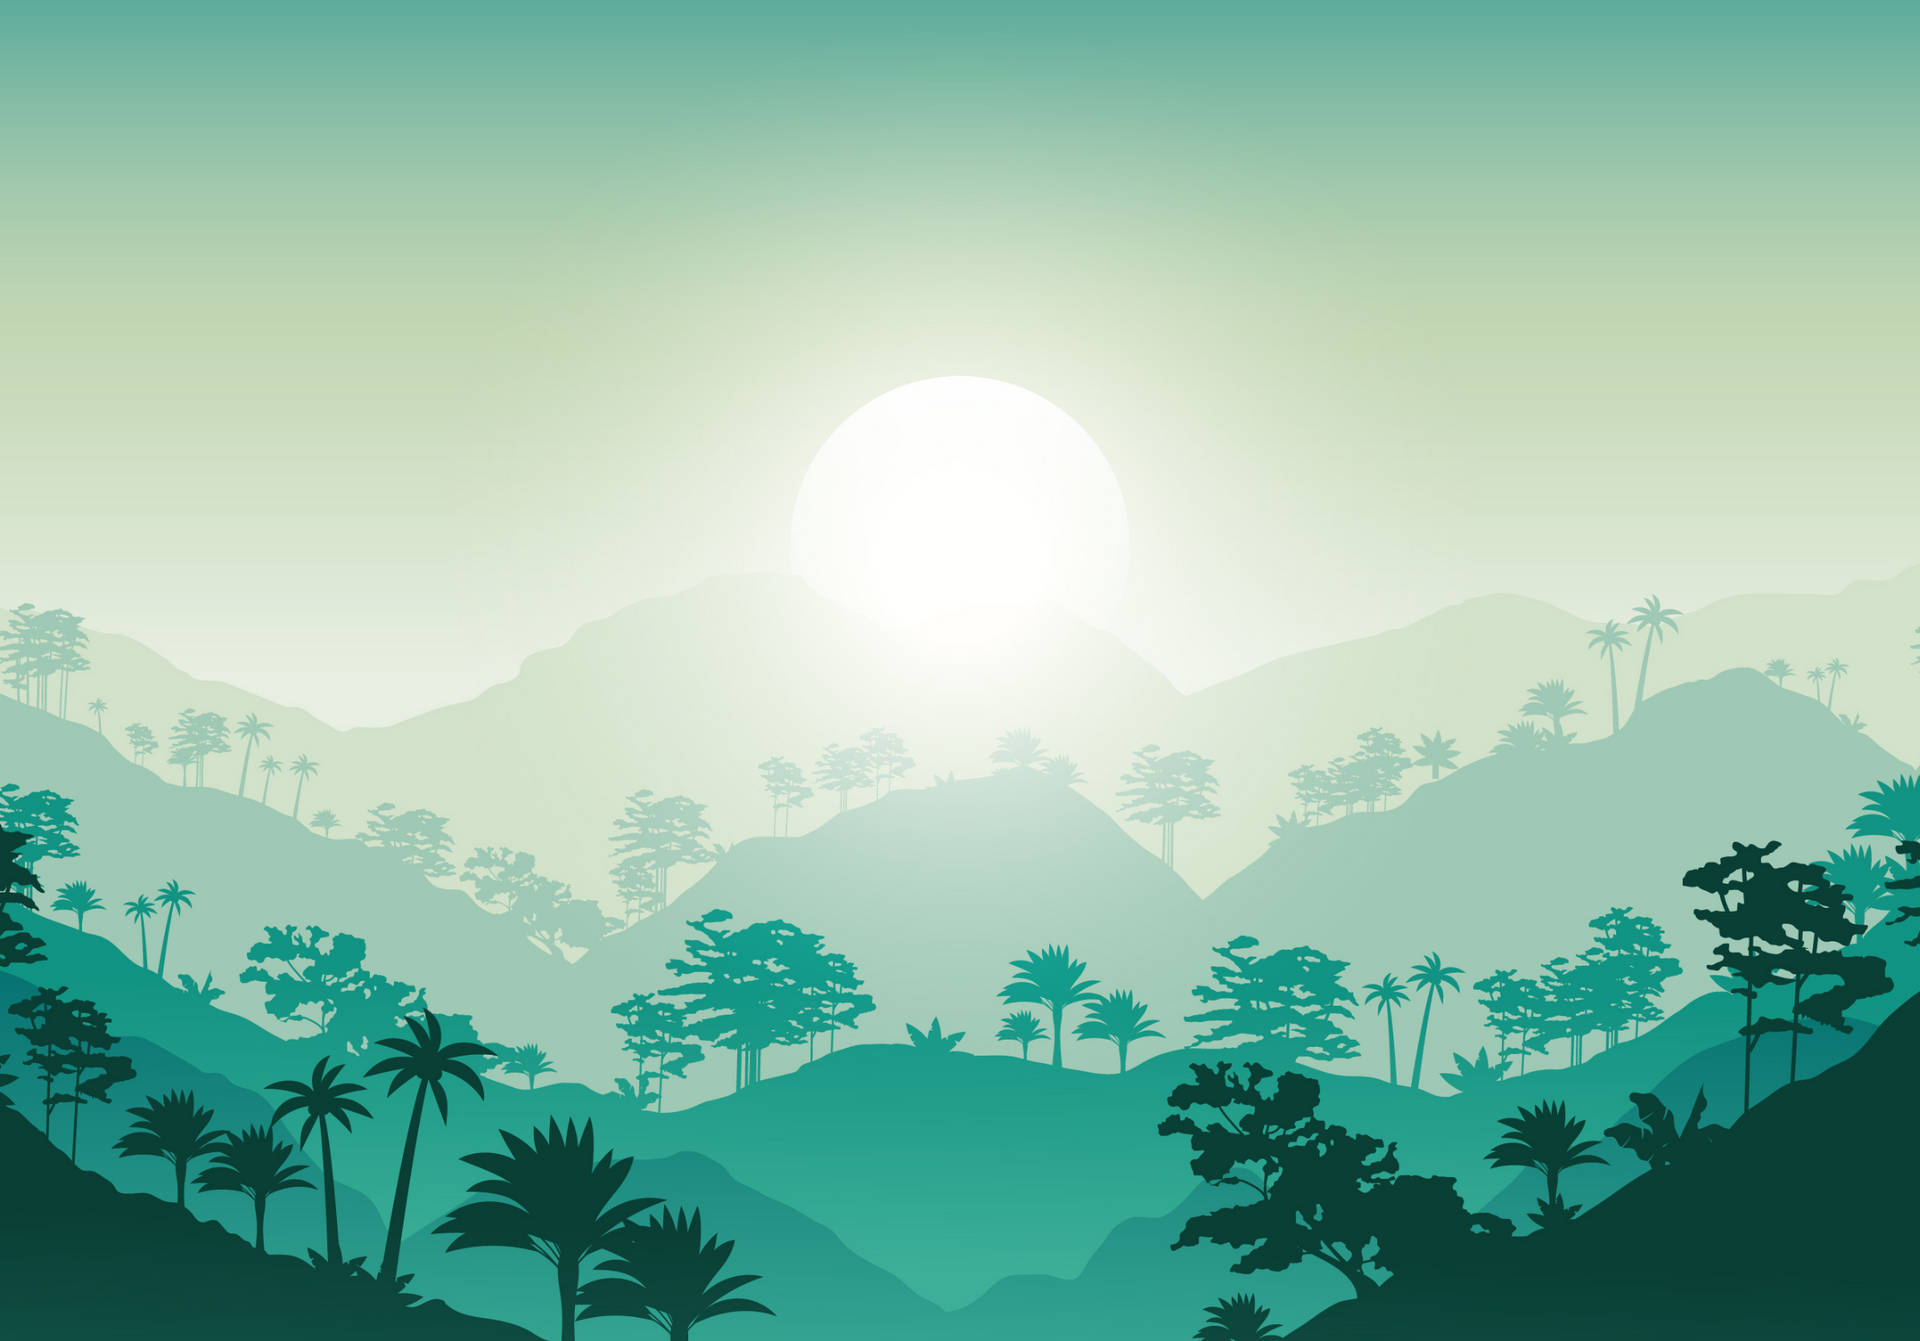 Ipad Pro 12.9 Turquoise Mountain Landscape Background